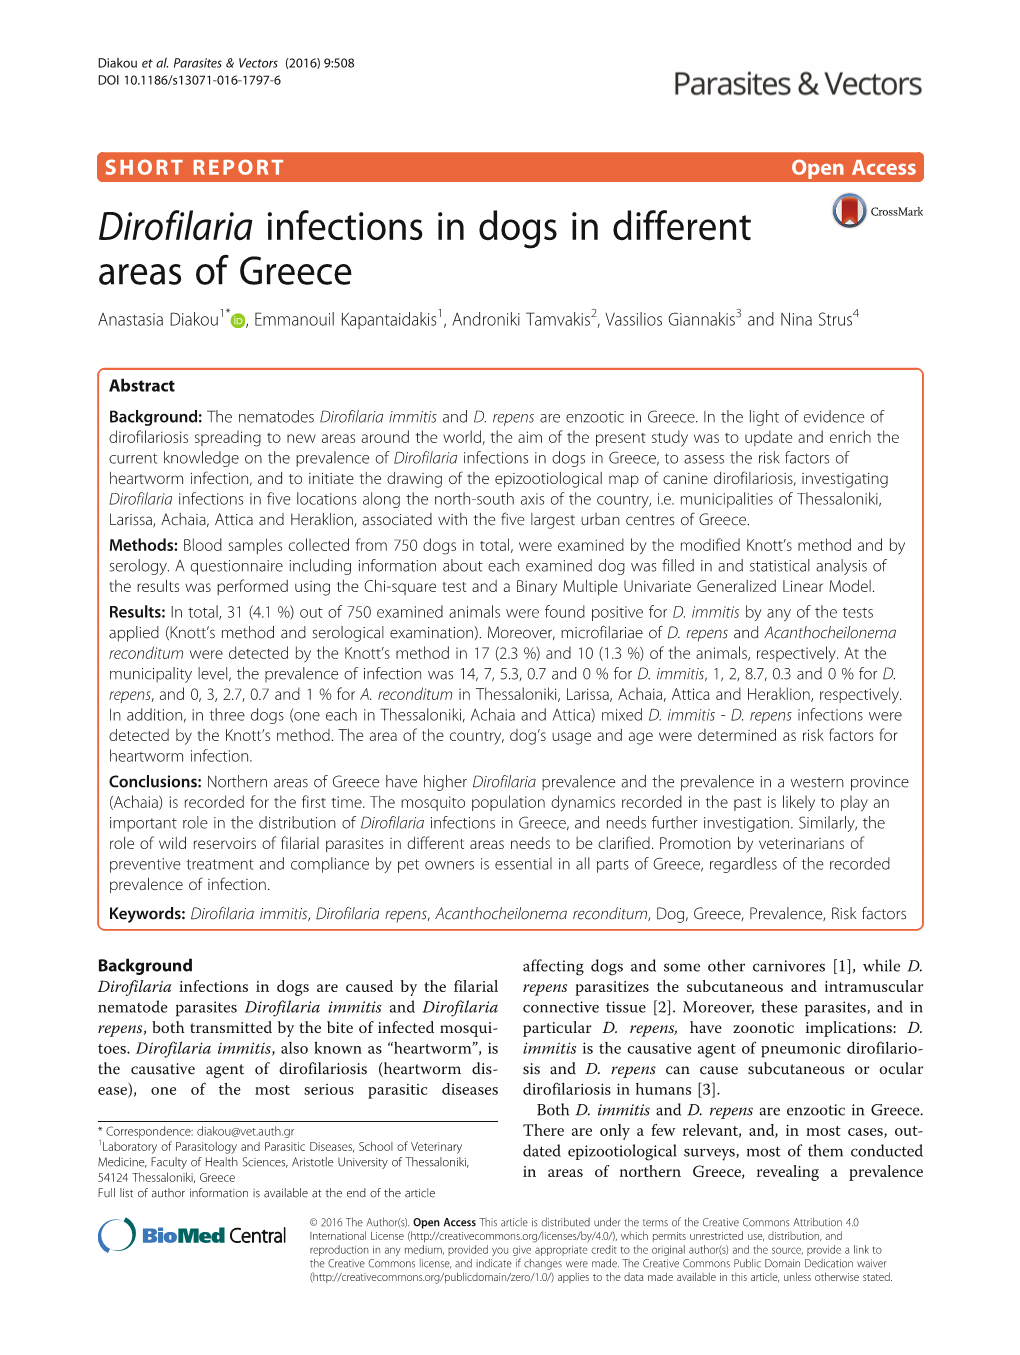 Dirofilaria Infections in Dogs in Different Areas of Greece Anastasia Diakou1* , Emmanouil Kapantaidakis1, Androniki Tamvakis2, Vassilios Giannakis3 and Nina Strus4